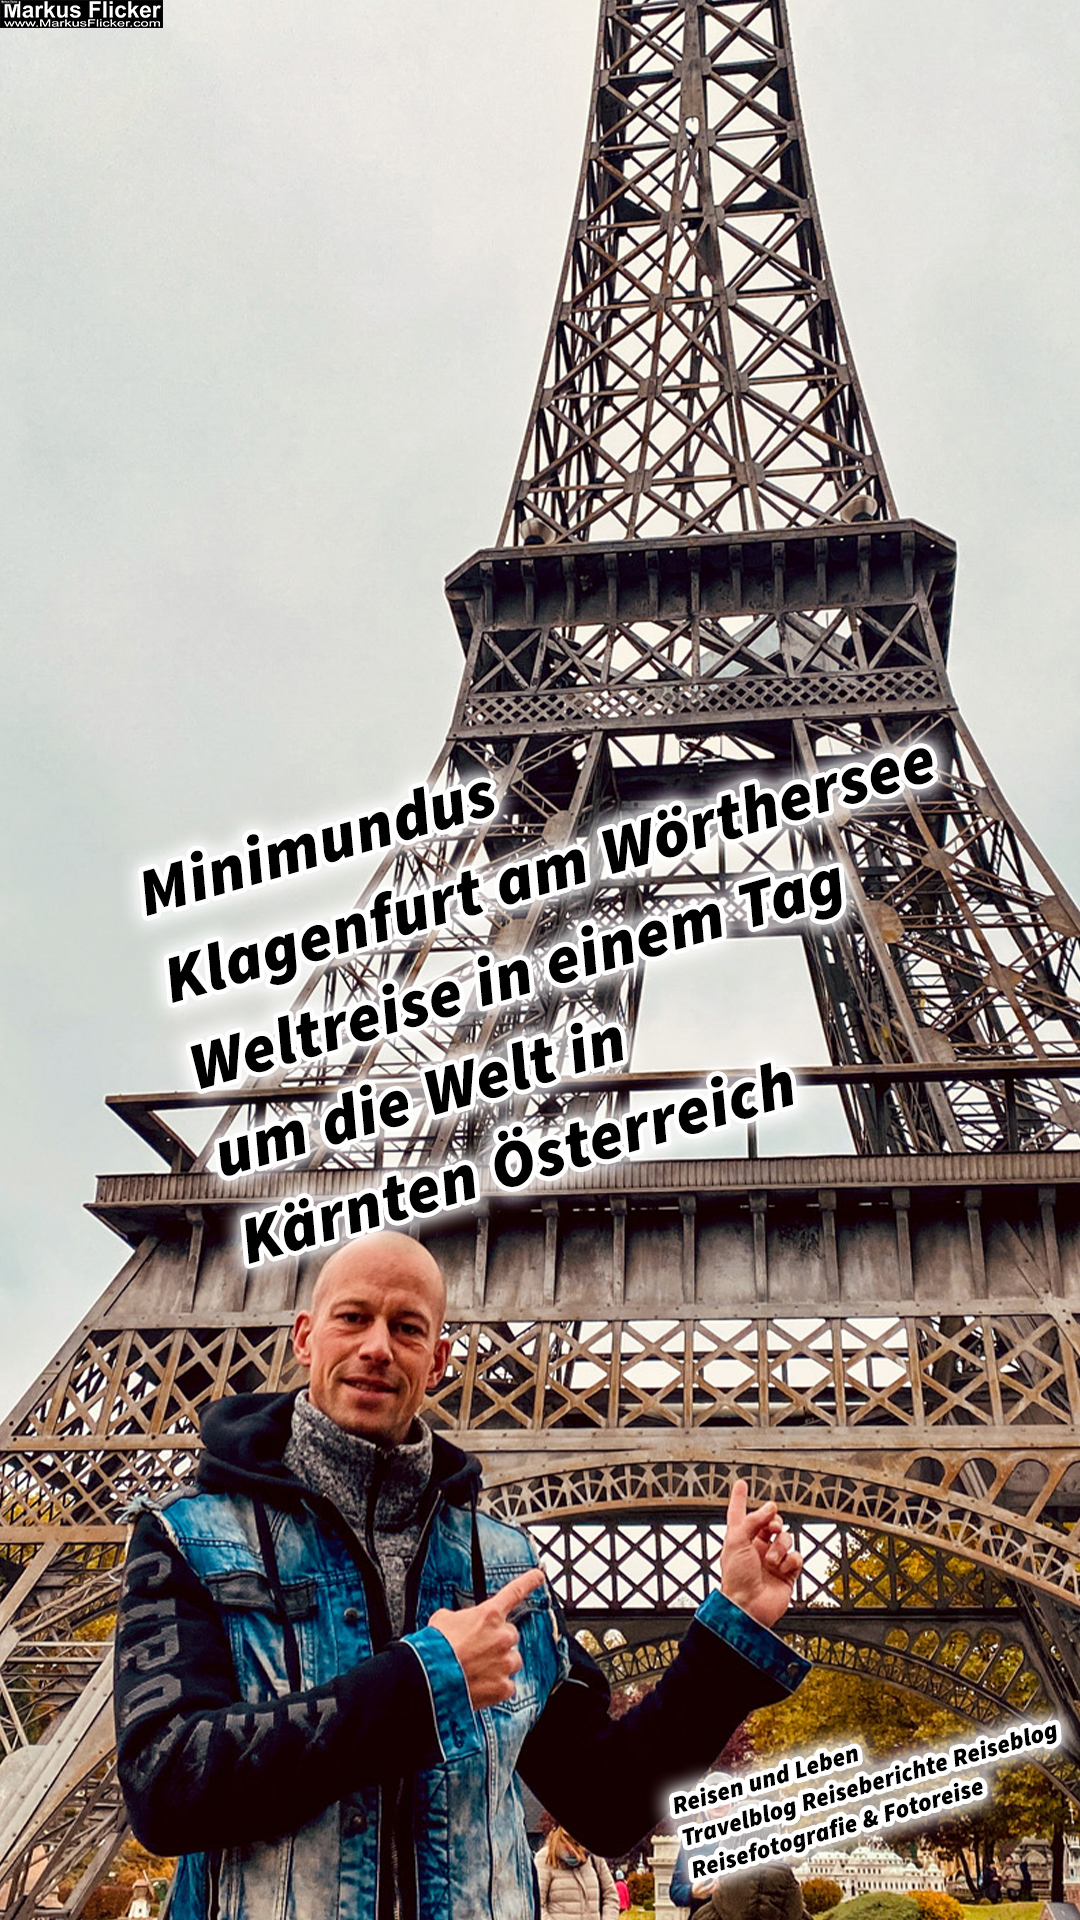 Minimundus Klagenfurt am Wörthersee Weltreise in einem Tag um die Welt in Kärnten Österreich #visitaustria